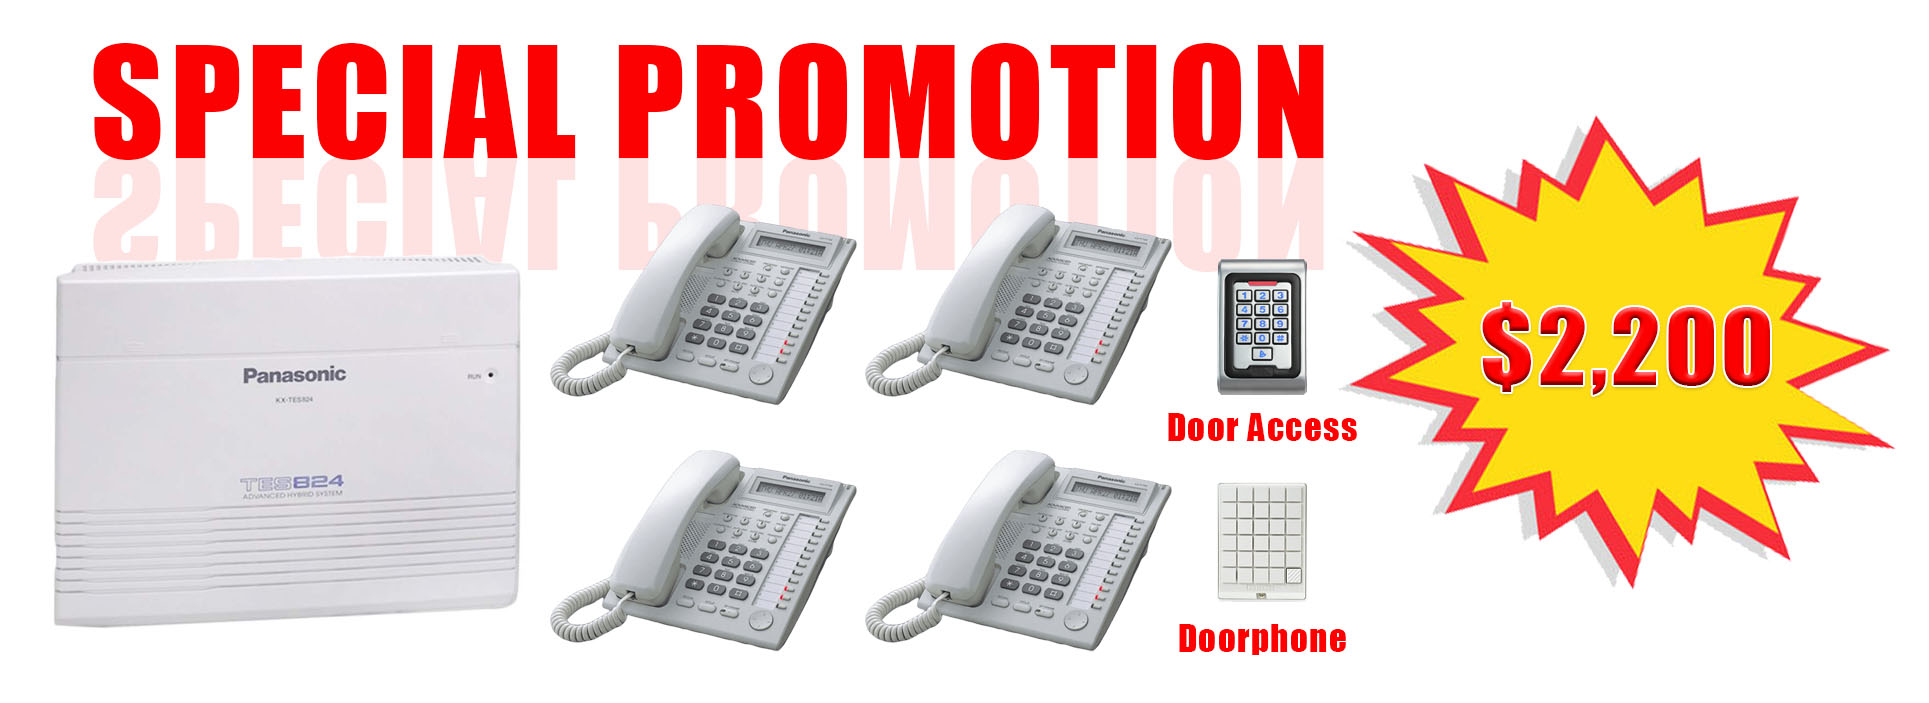 4 IP Phones, 1 PABX, 1 Doorphone and 1 Door Access